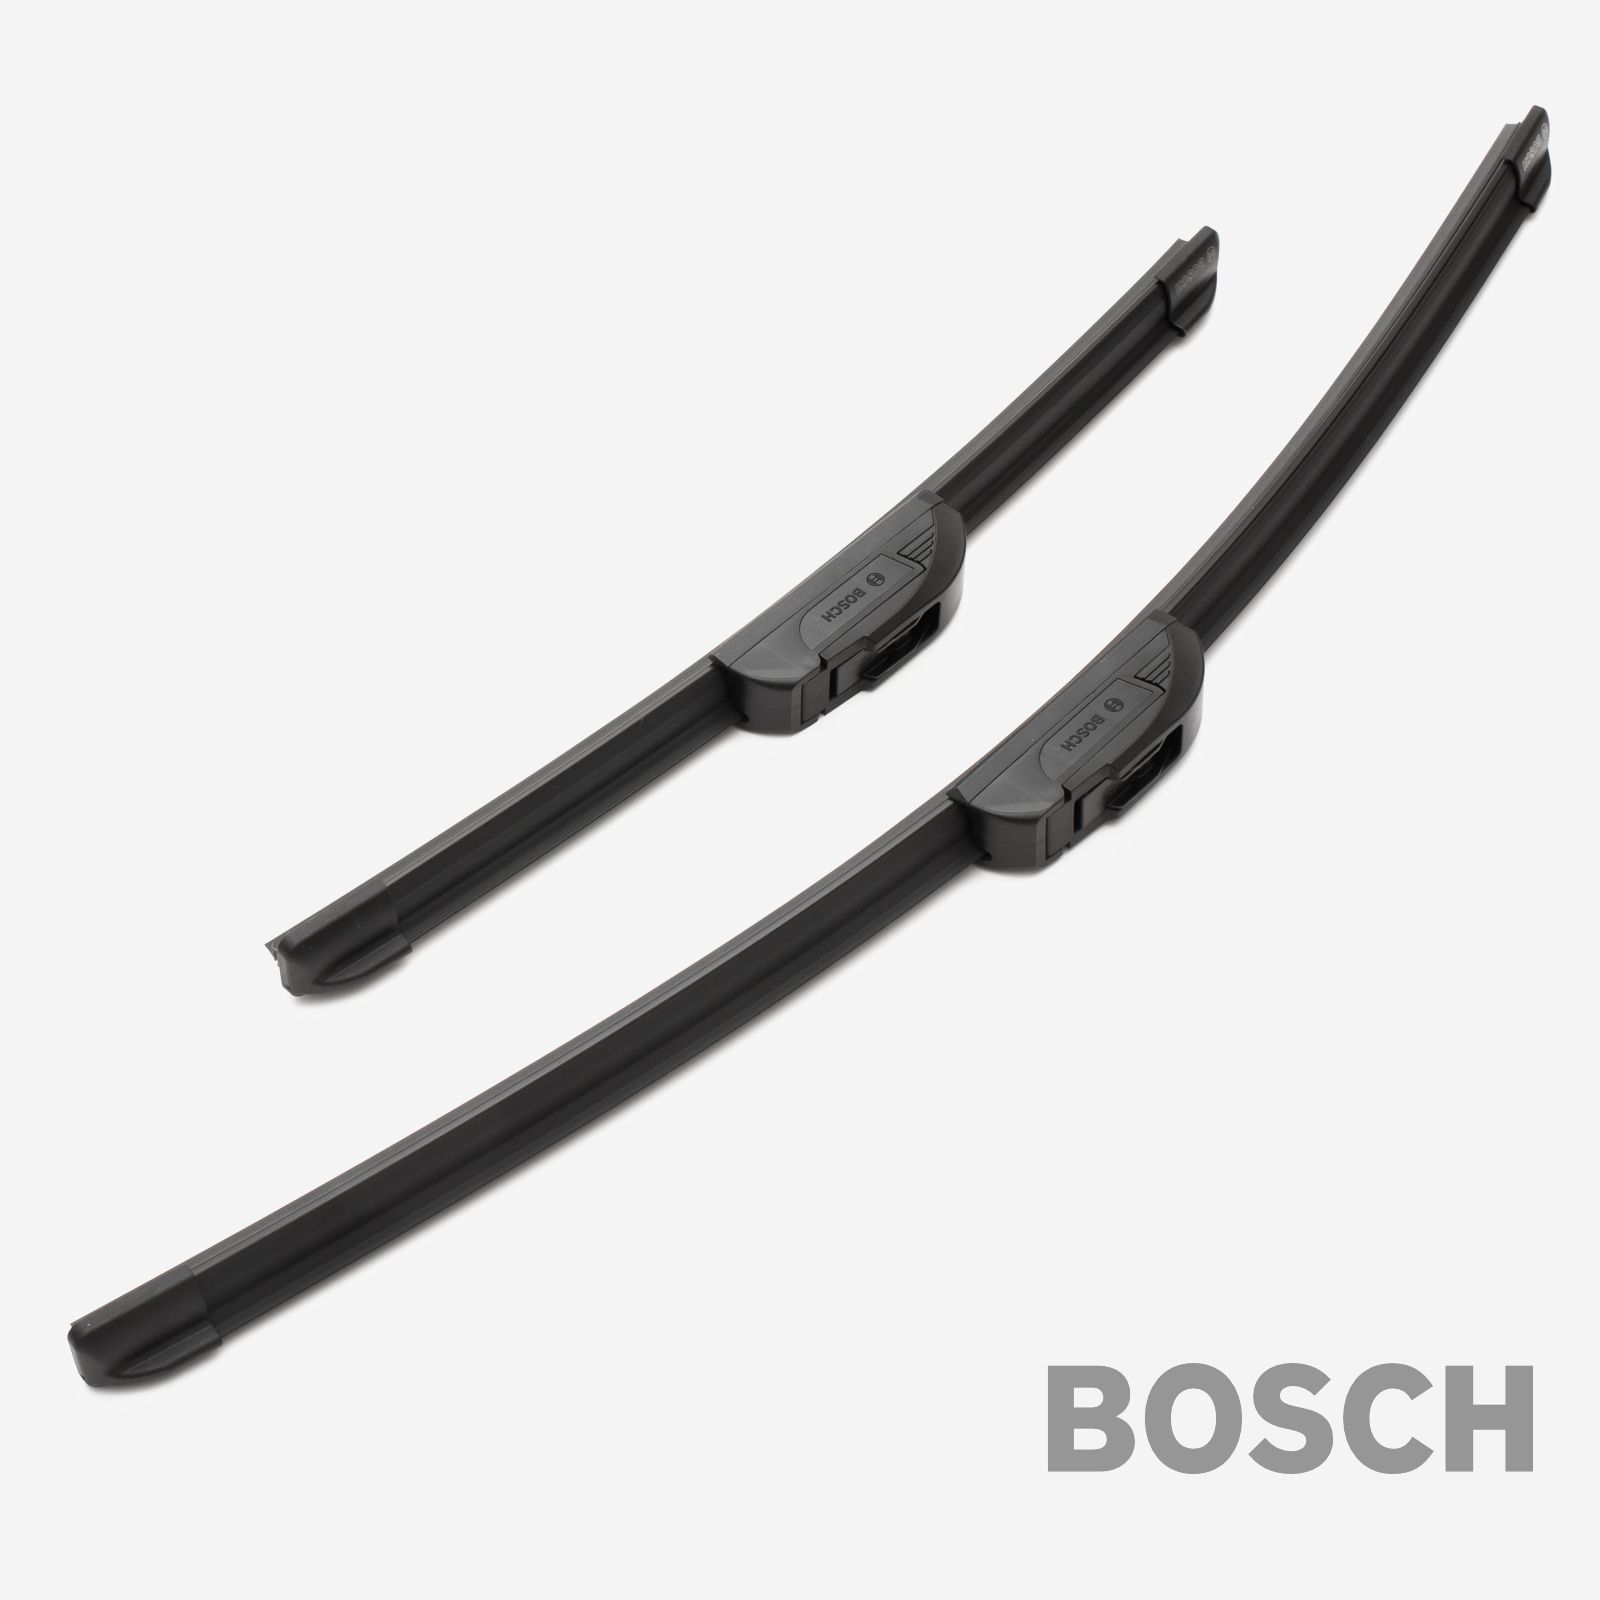 Bosch Scheibenwischer Ersatz Gummi Z361 450mm für Honda ✓ AKR Performance